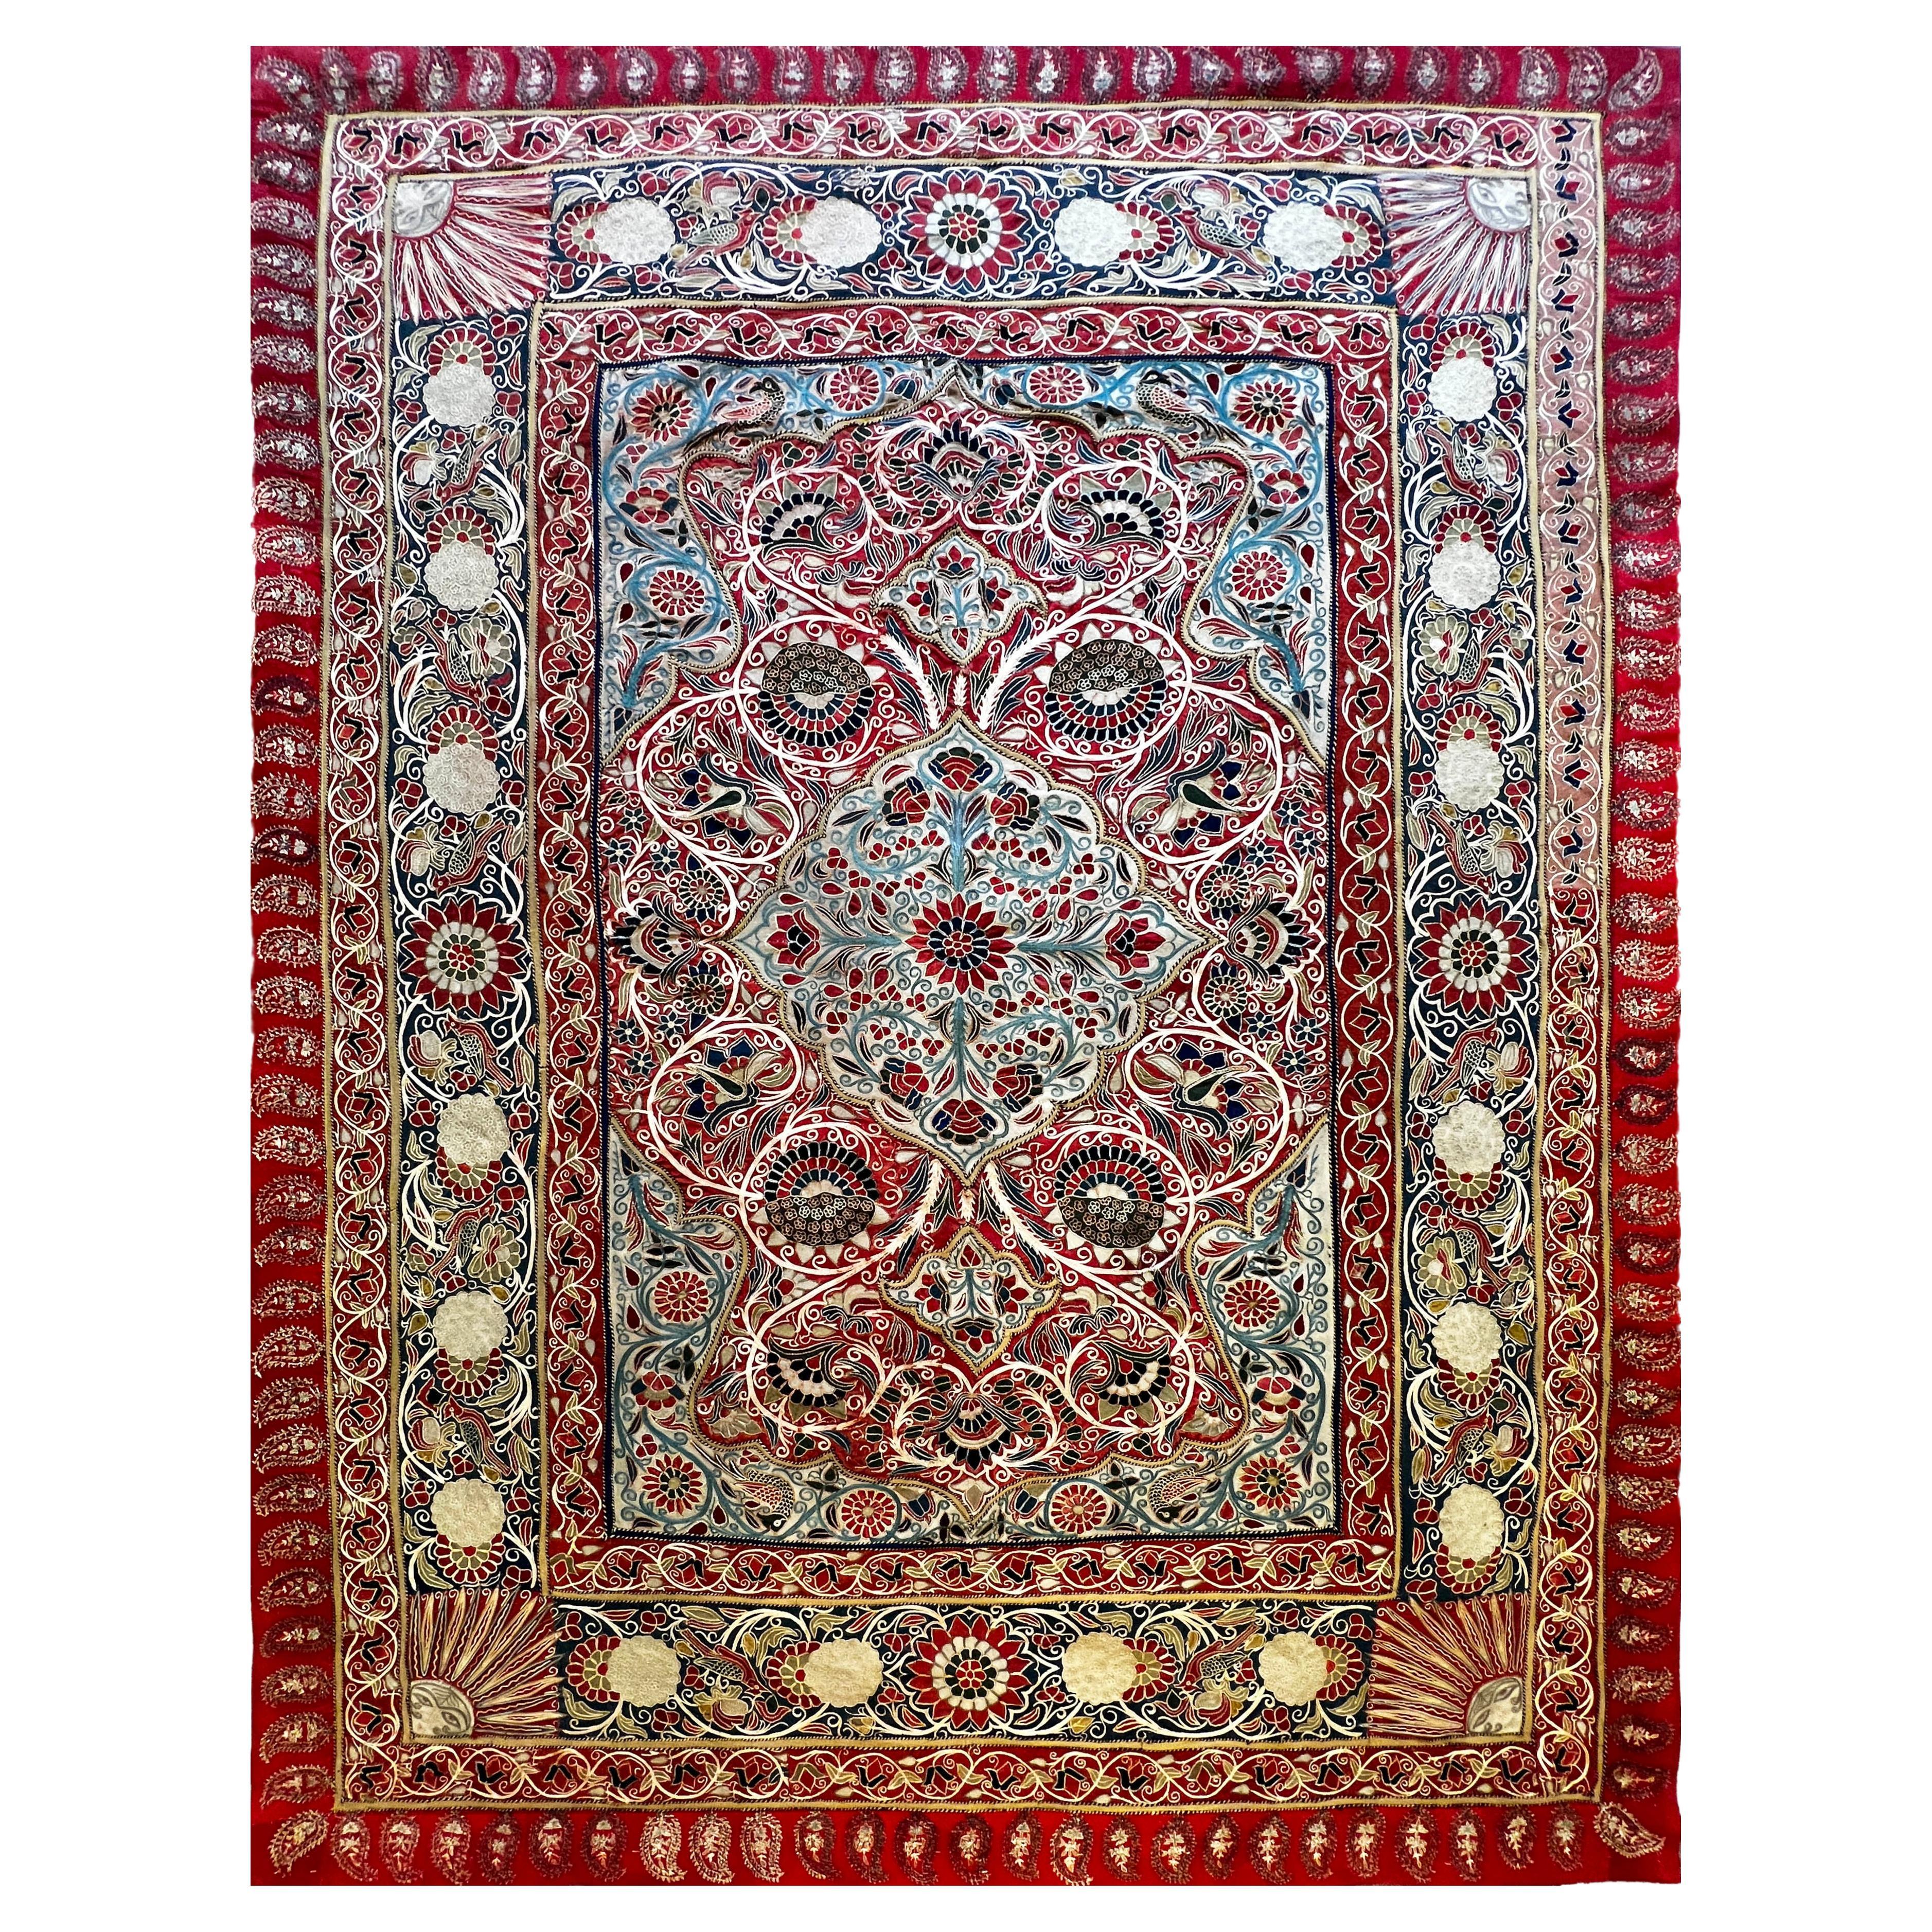 Tissu décoratif persan du 19e siècle  (RESHT) Rashtidouzi - N°1215